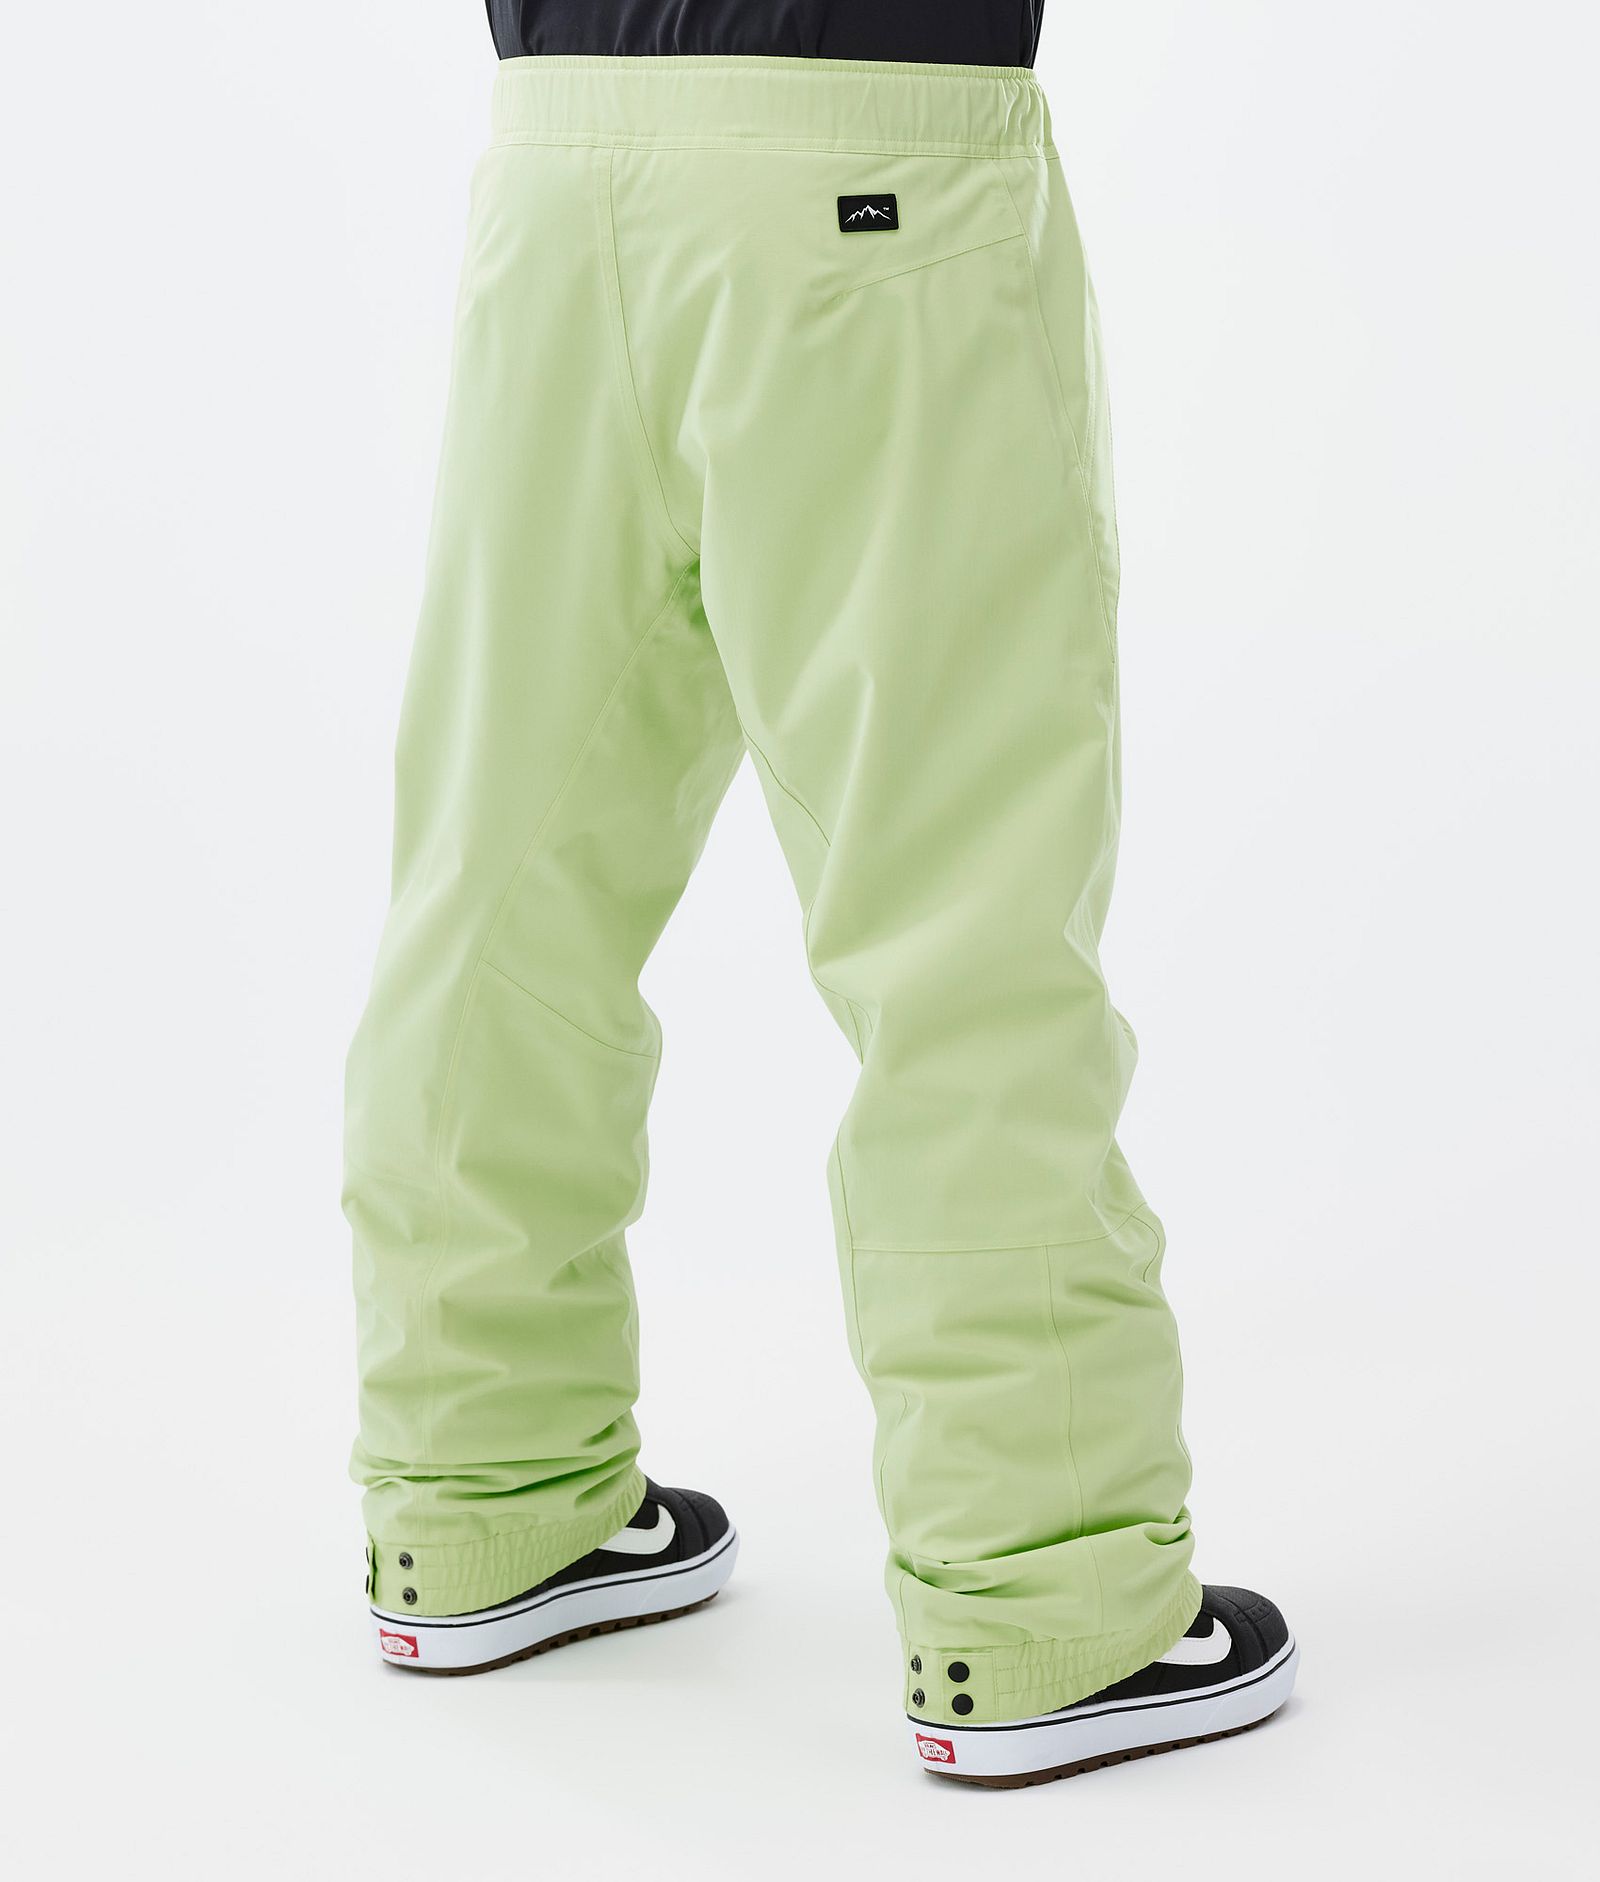 Dope Blizzard Pantalones Snowboard Hombre Faded Neon